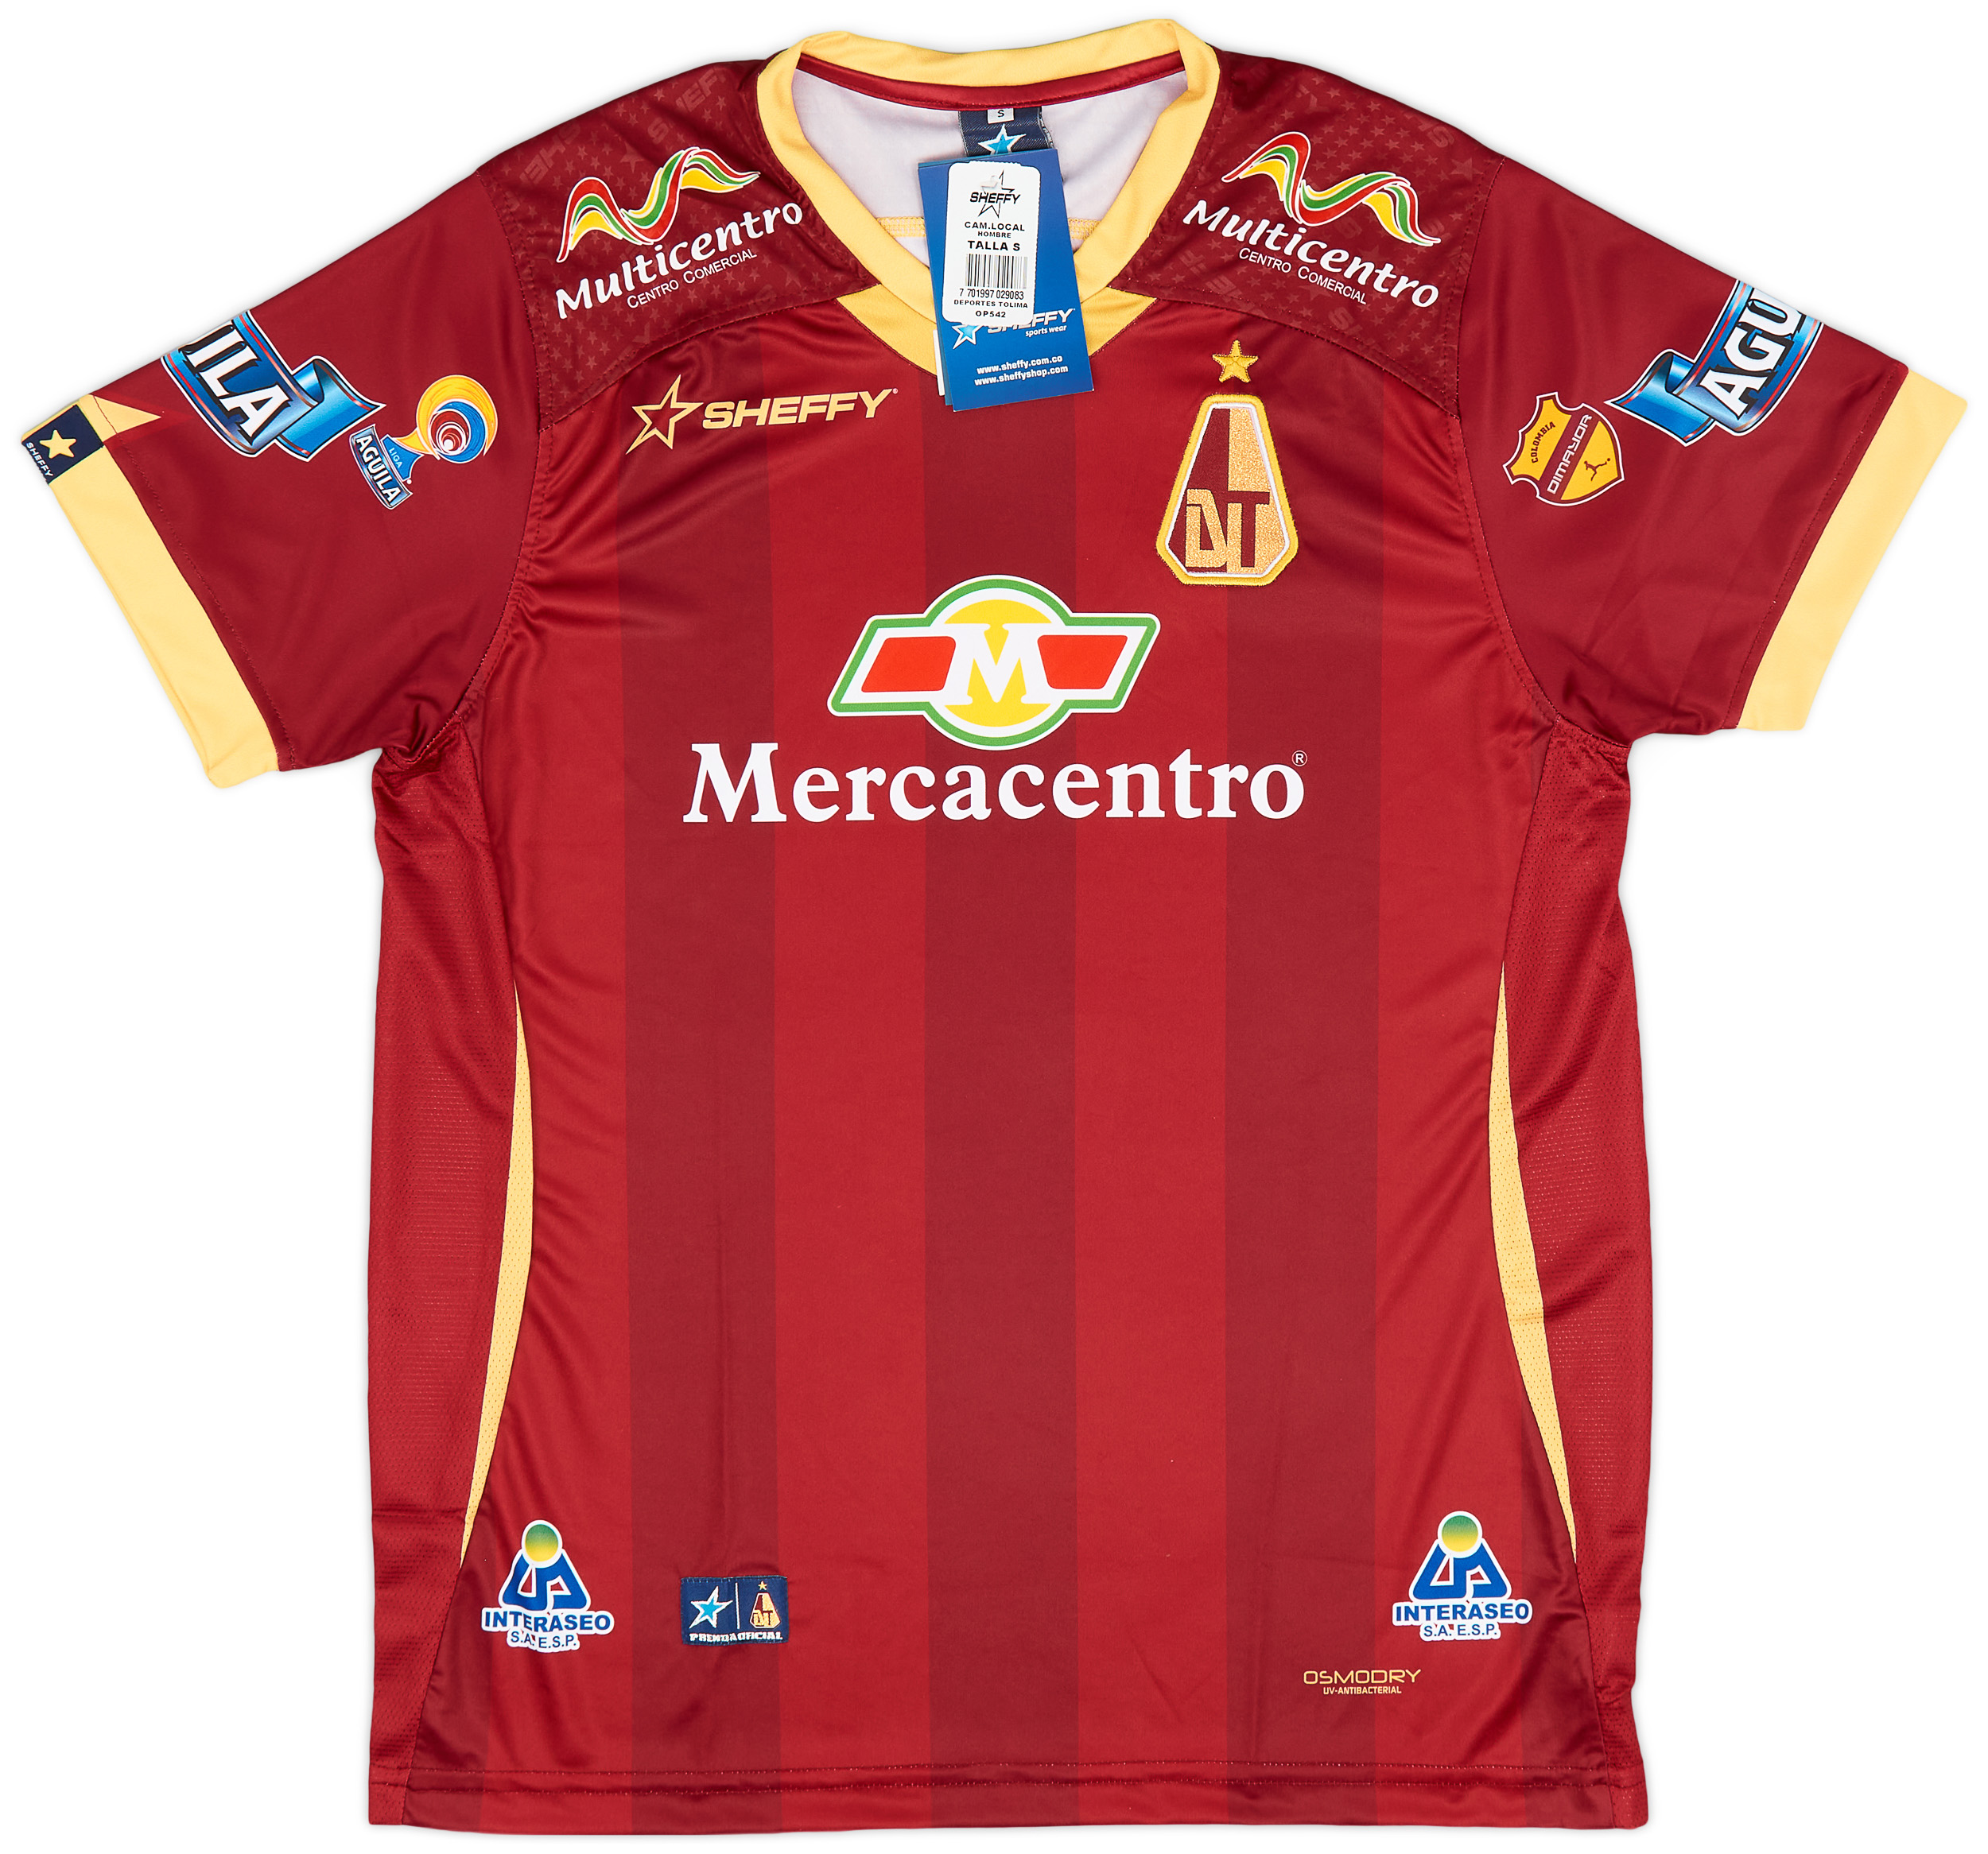 Deportes Tolima  home shirt (Original)